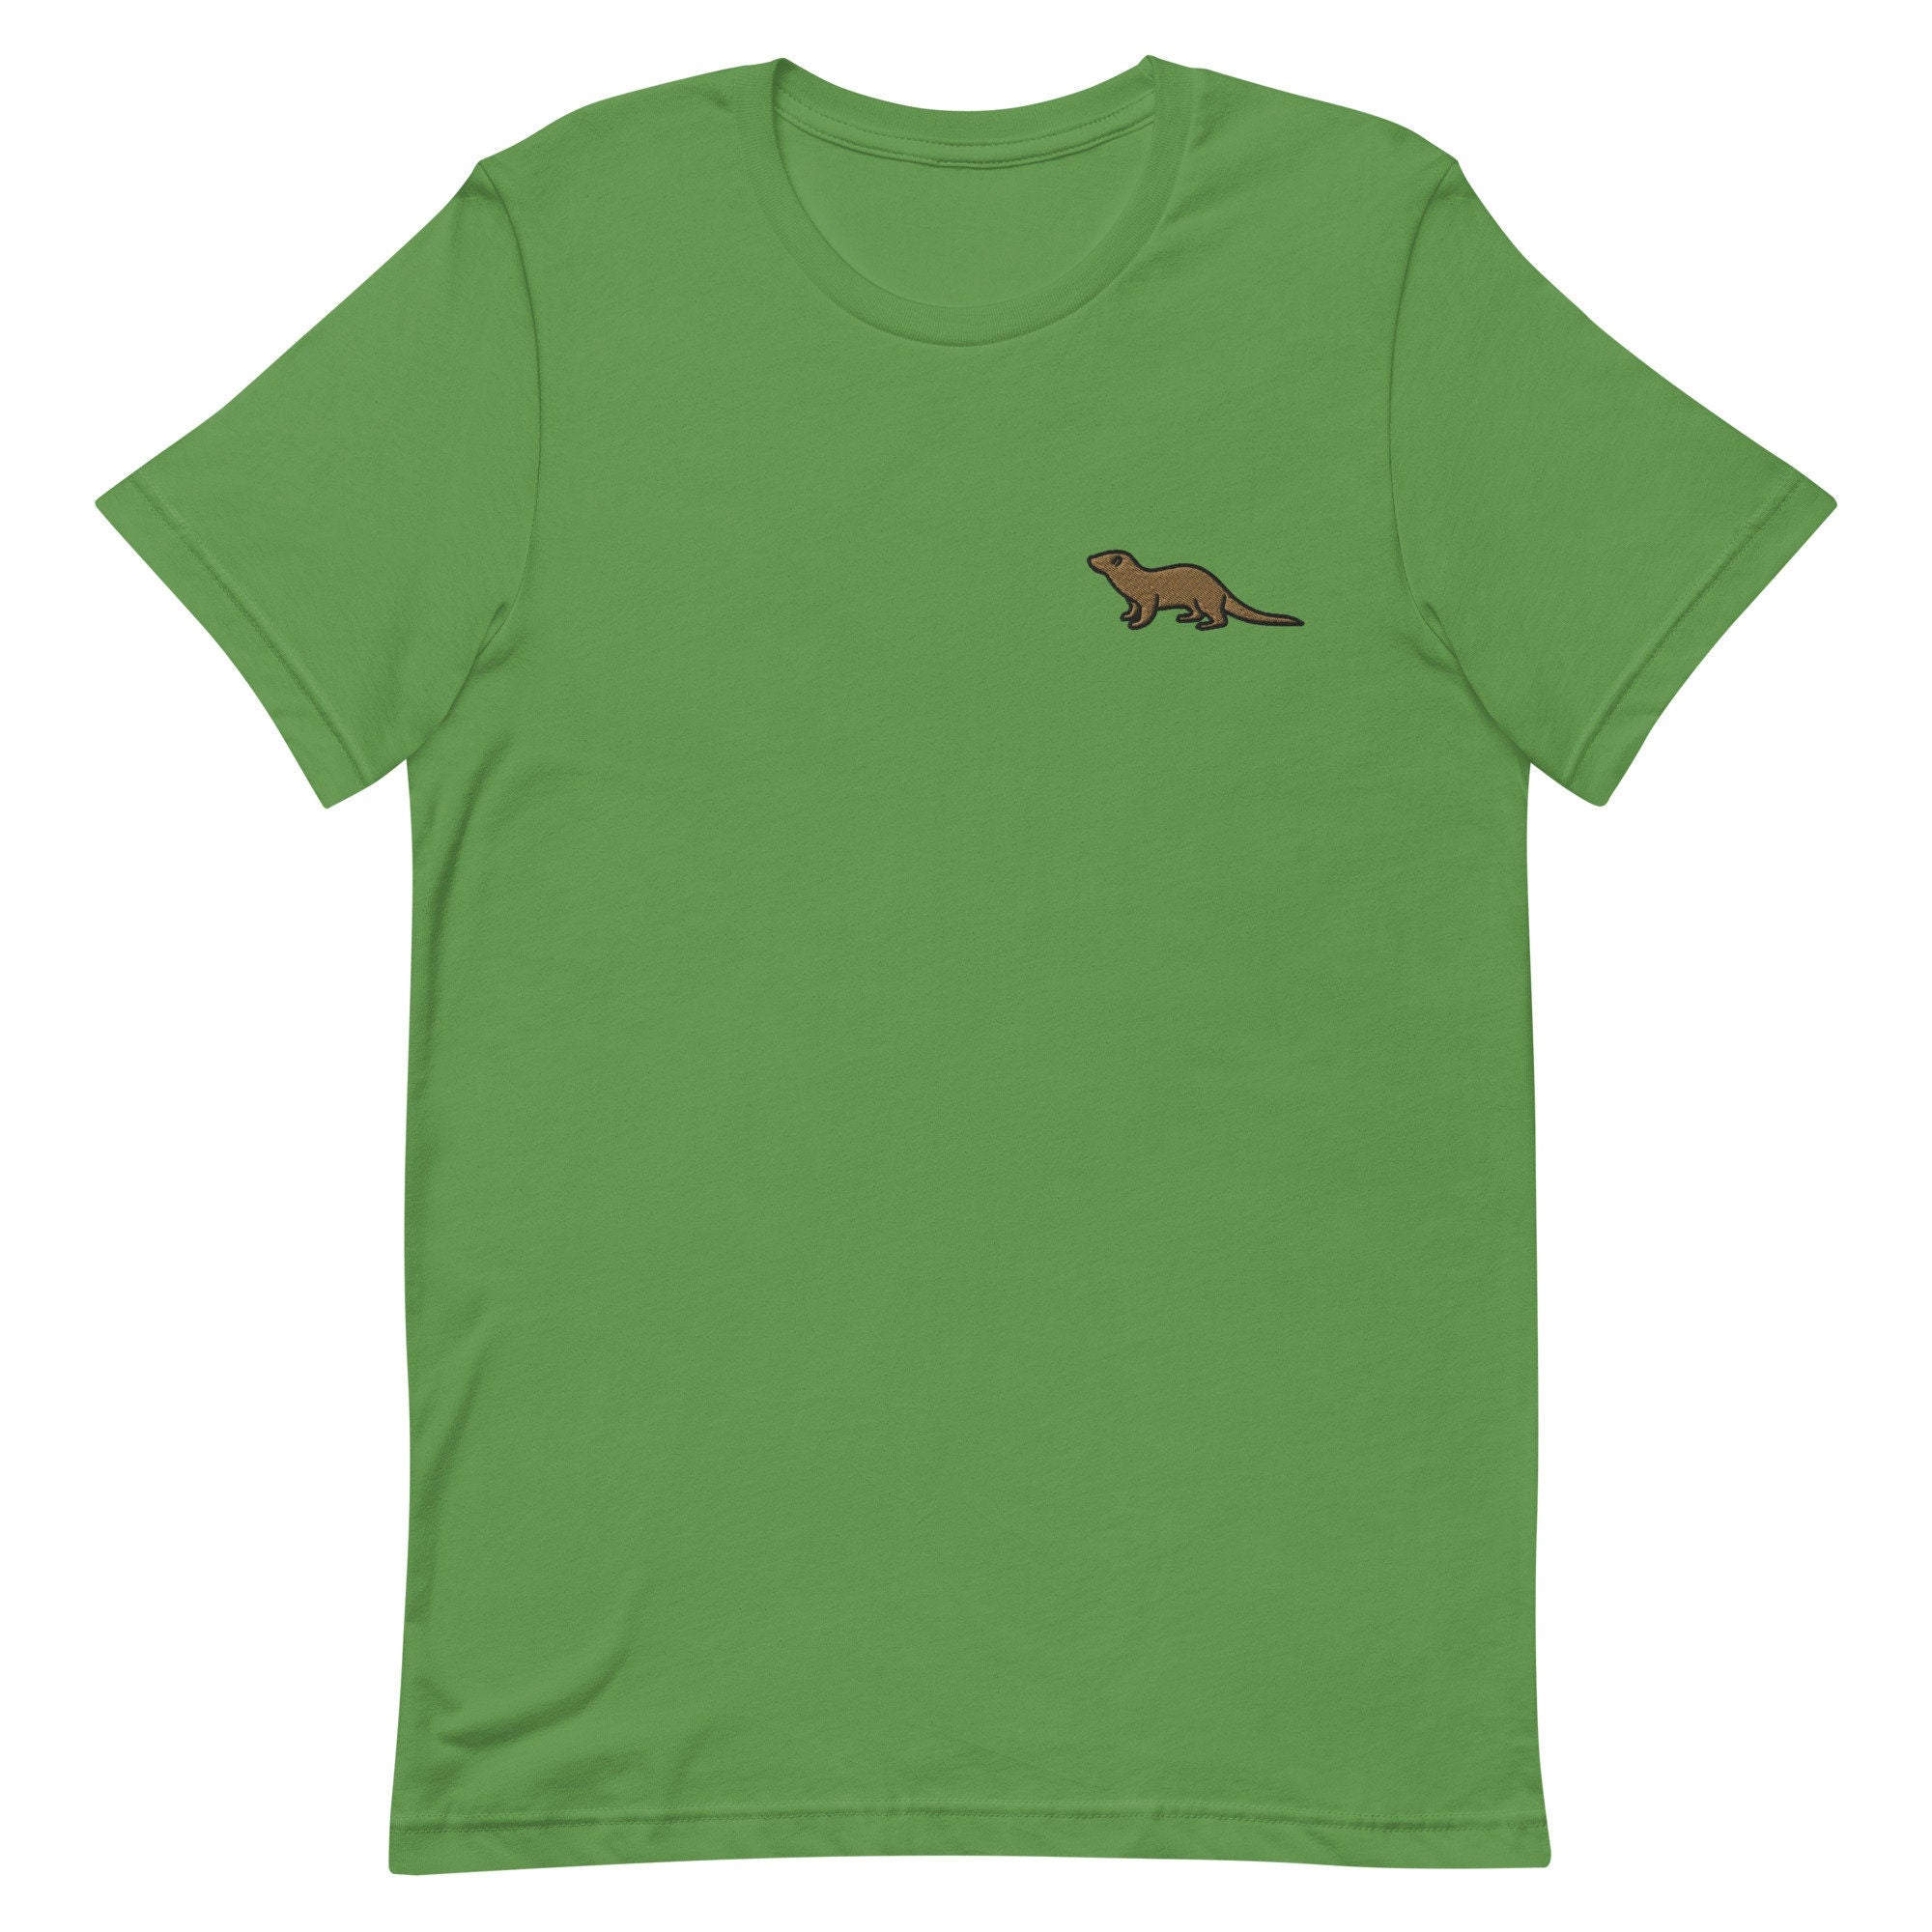 Otter Premium Men's T-Shirt, Embroidered Men's T-Shirt Gift for Boyfriend, Men's Short Sleeve Shirt - Multiple Colors